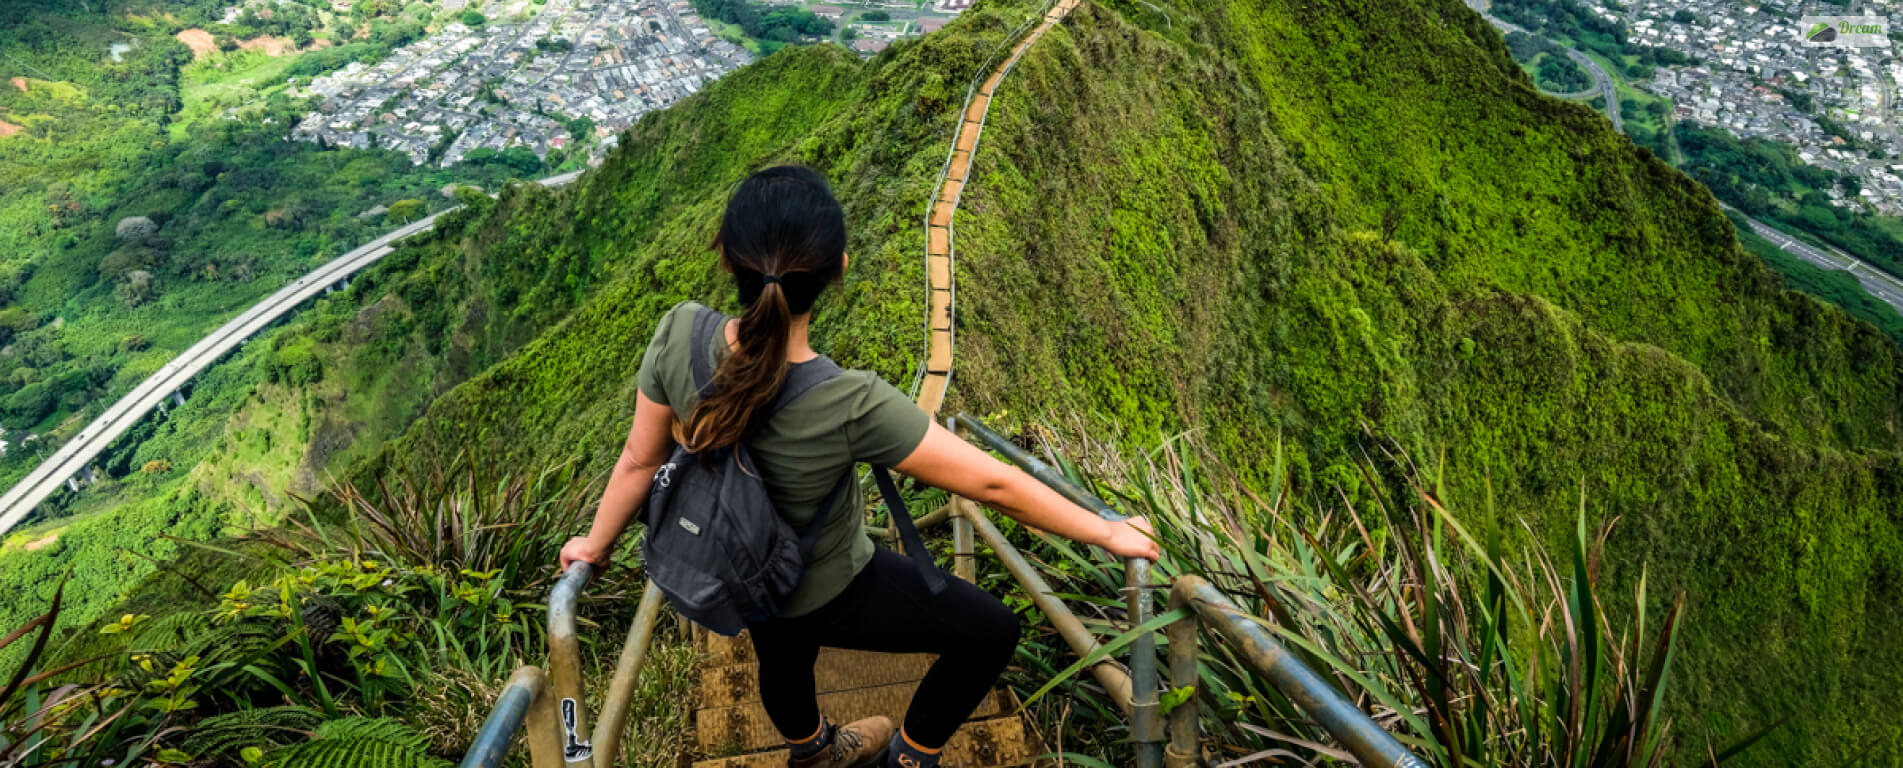 Stairway To Heaven Hike On Oahu, Hawaii: Updated 2023